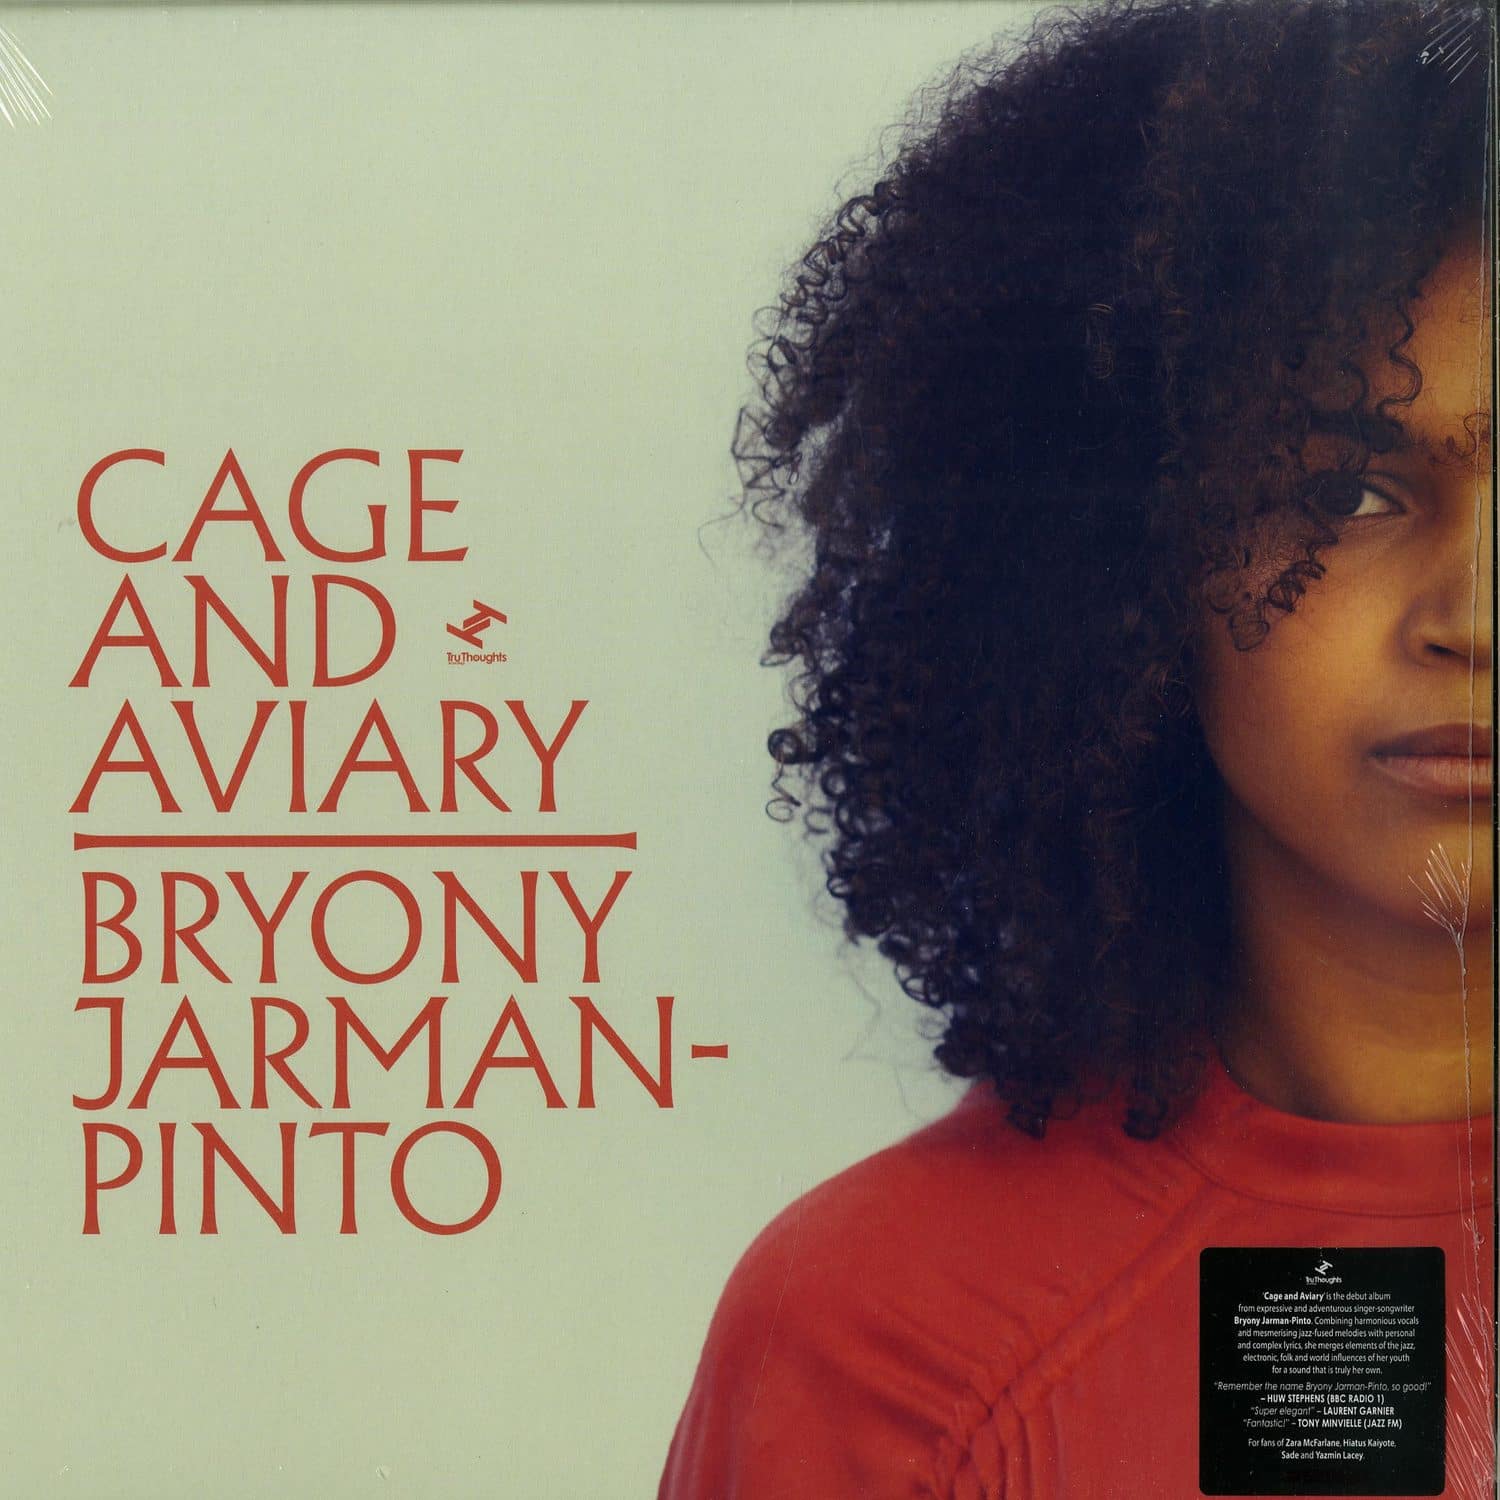 Bryony Jarman-Pinto - CAGE AND AVIARY 